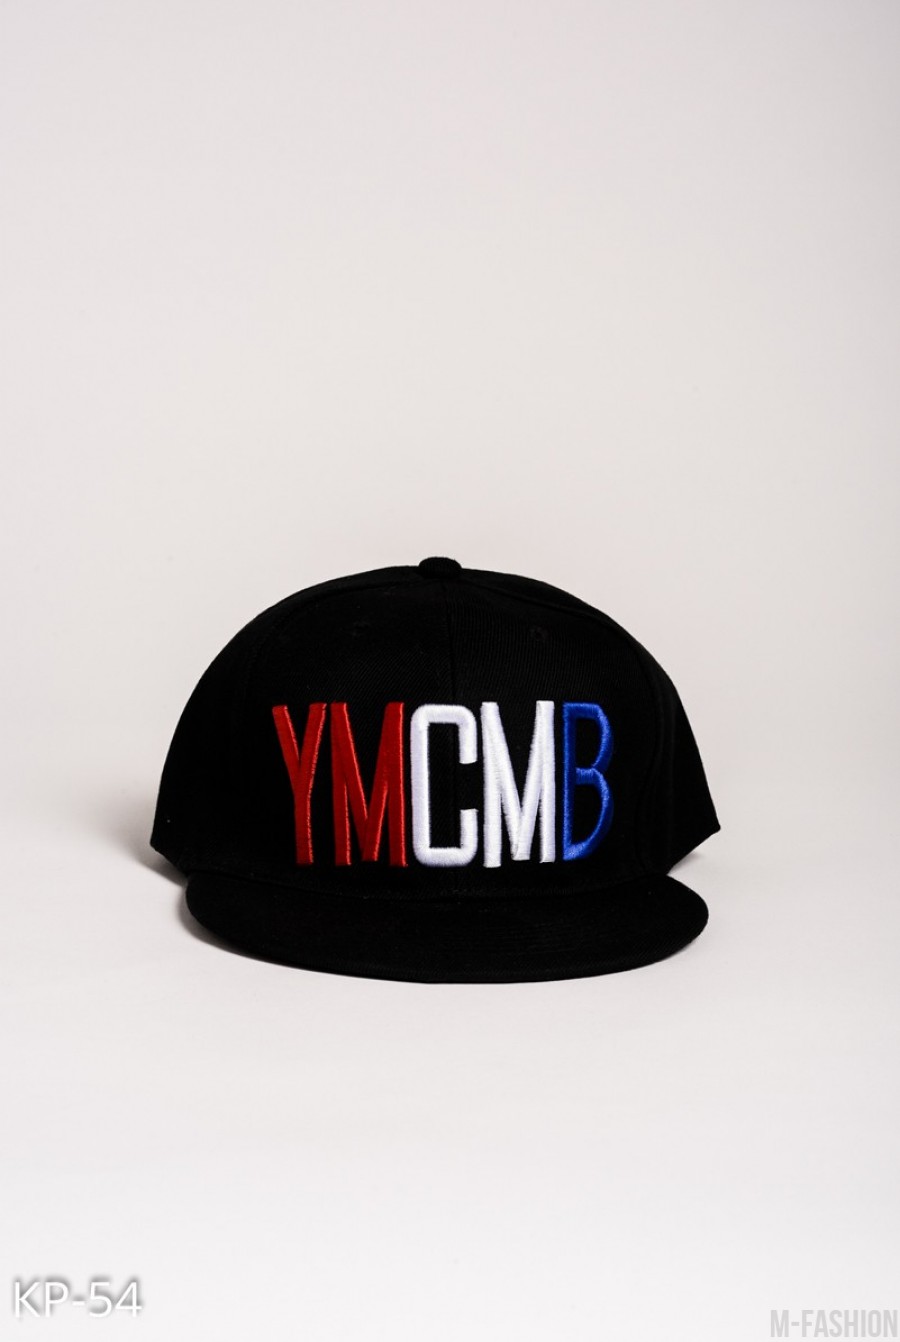 Черная кепка с красно-бело-синей вышивкой YMCMB - Фото 1